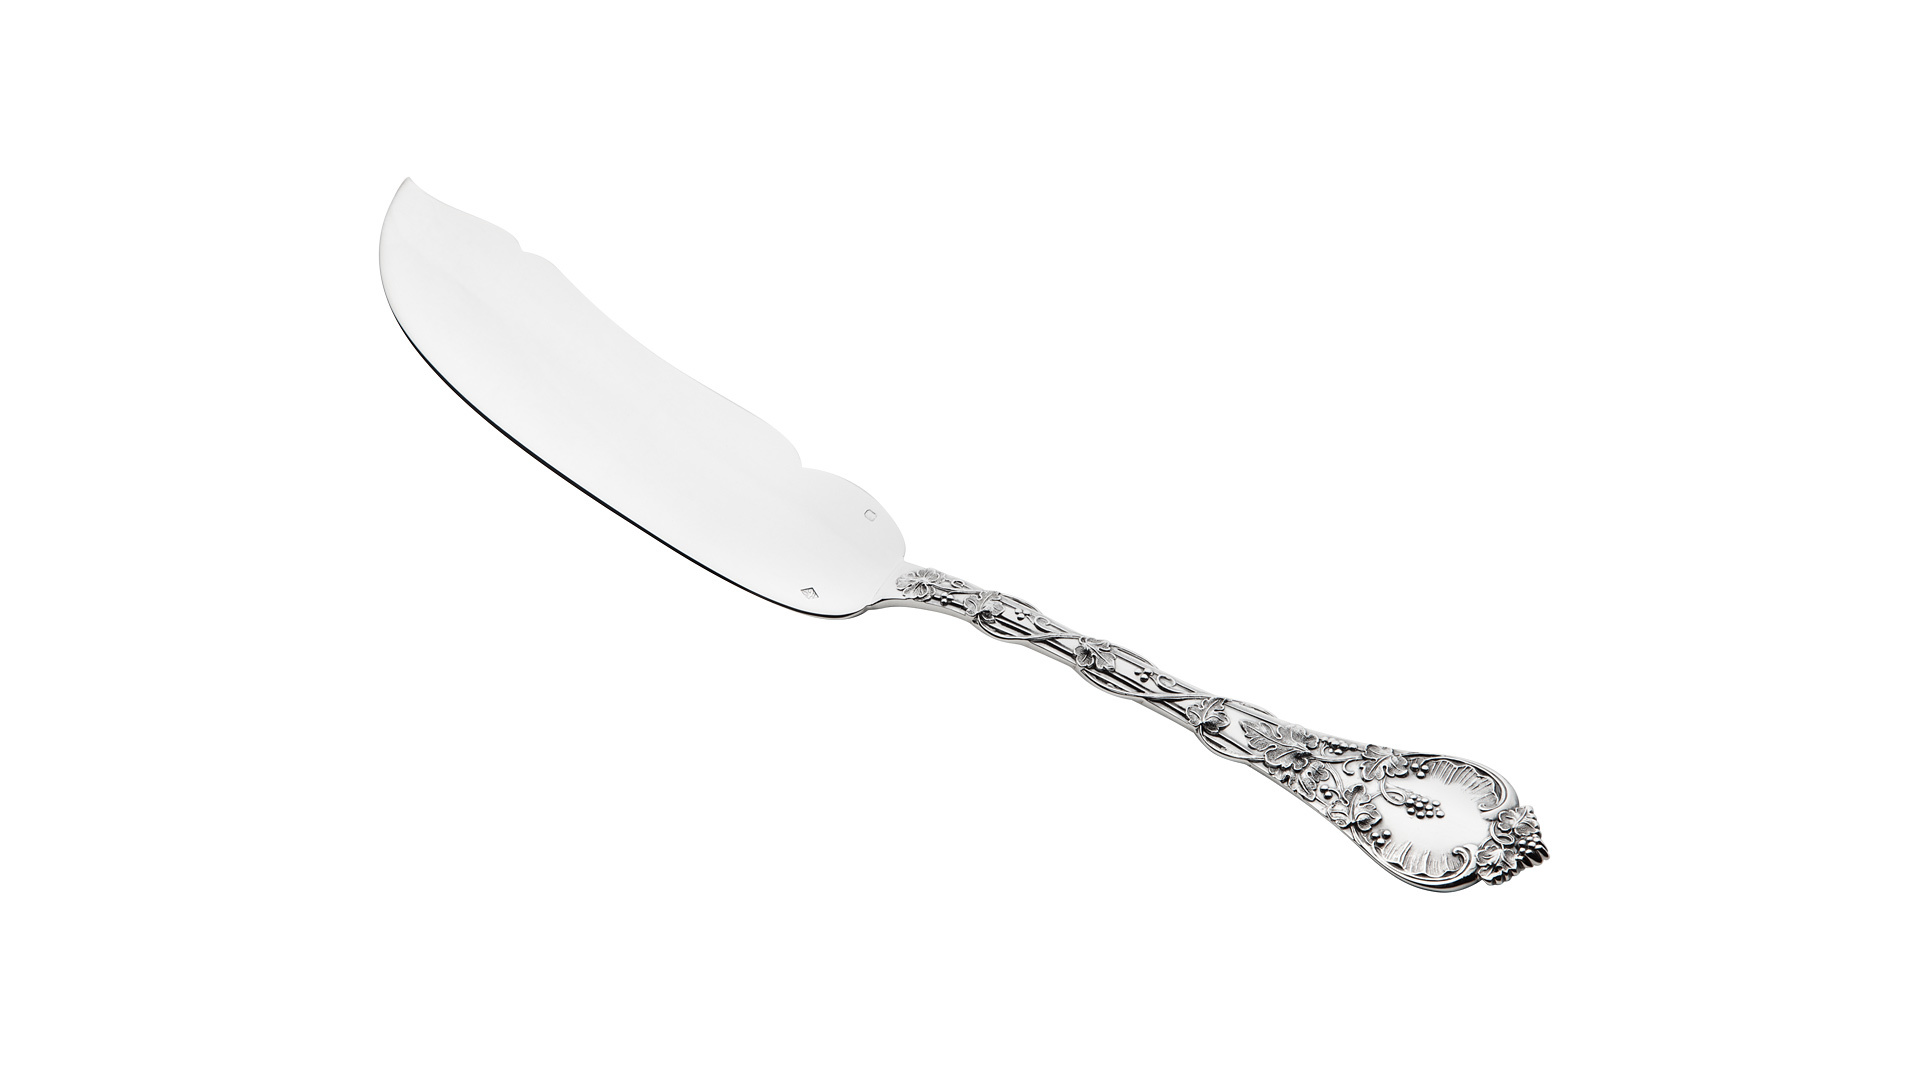 Нож для рыбы сервировочный Odiot Демидофф 28,3 см, серебро 925